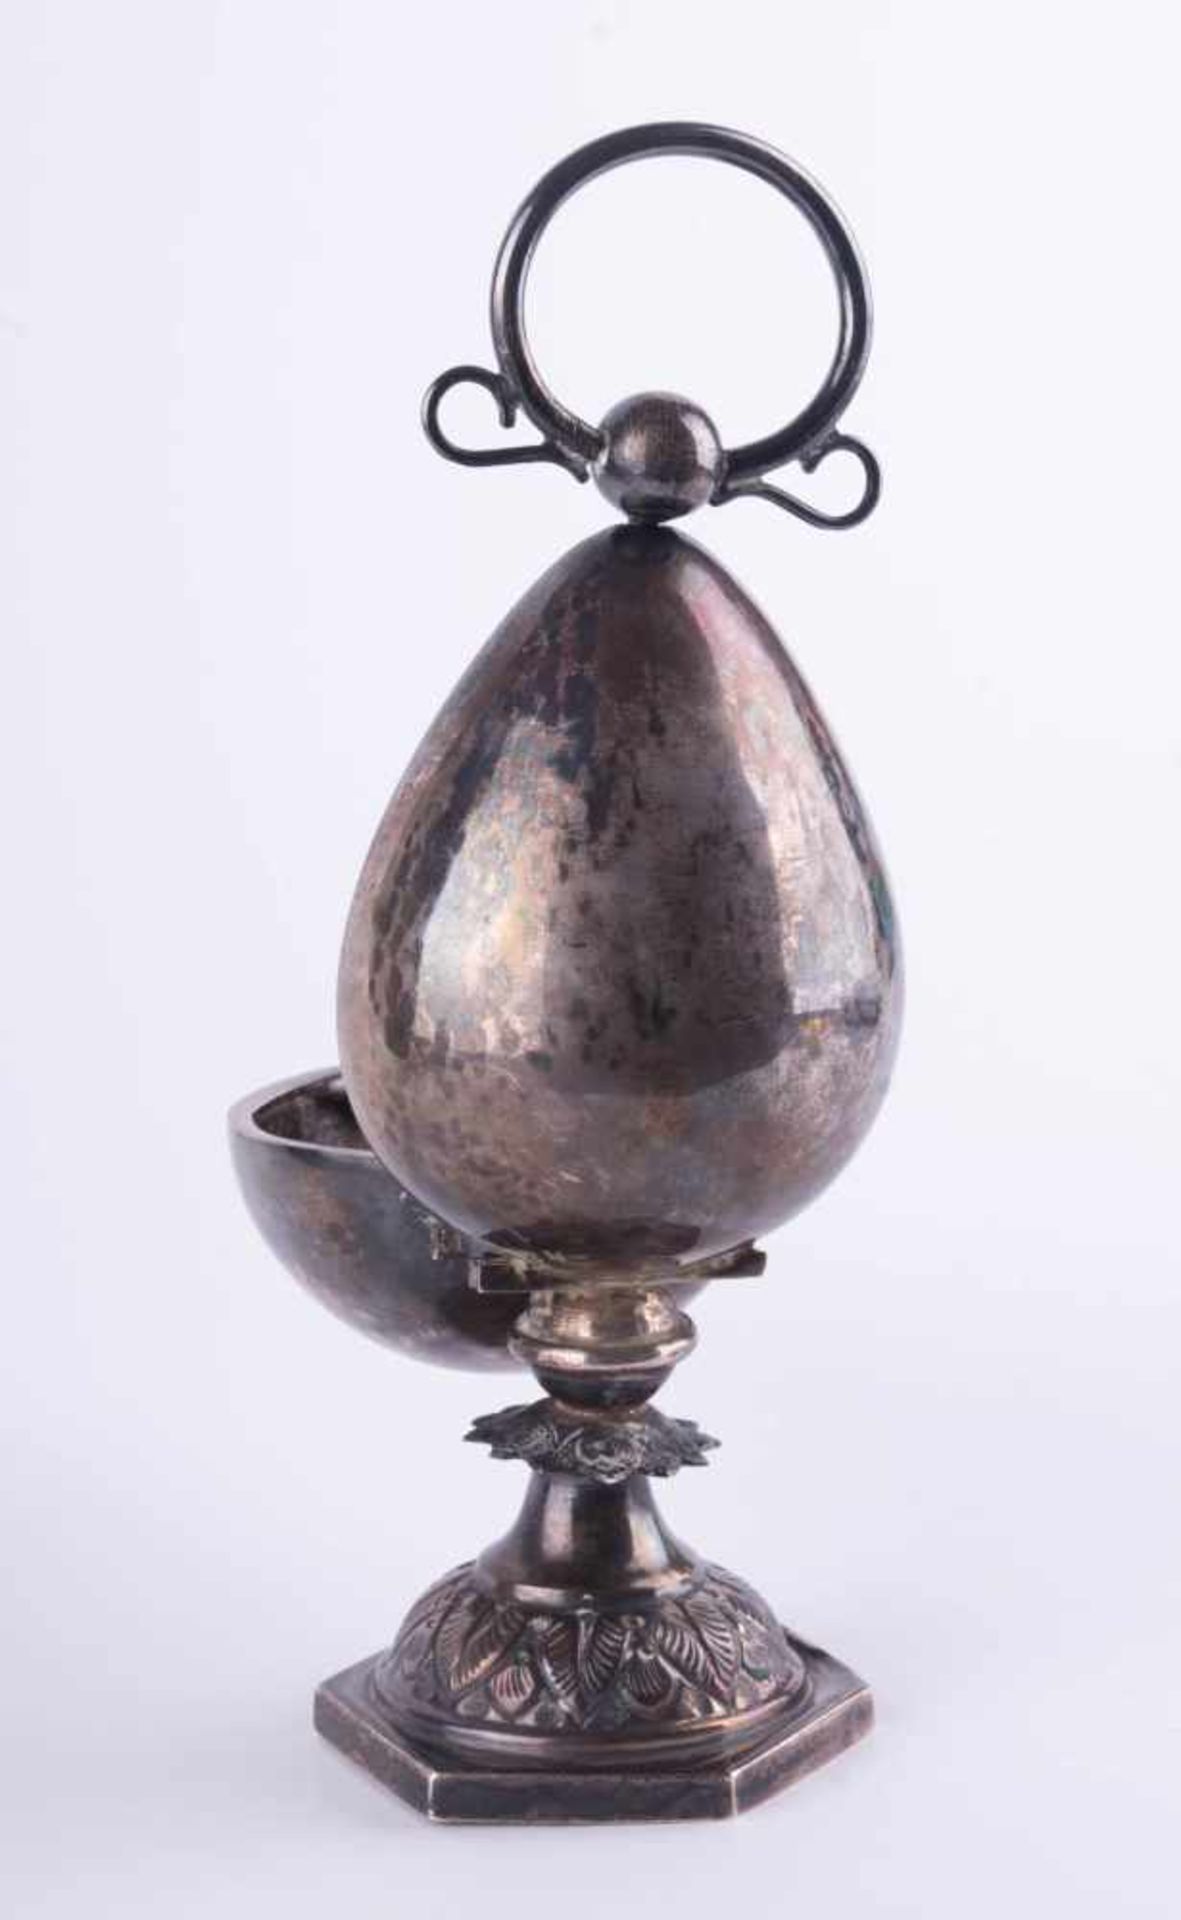 Parfumflakon-Halter 19. Jhd. Silber geprüft, in Form eines Ei, aufklappbar, innen 4 kleine Flakons - Bild 3 aus 3